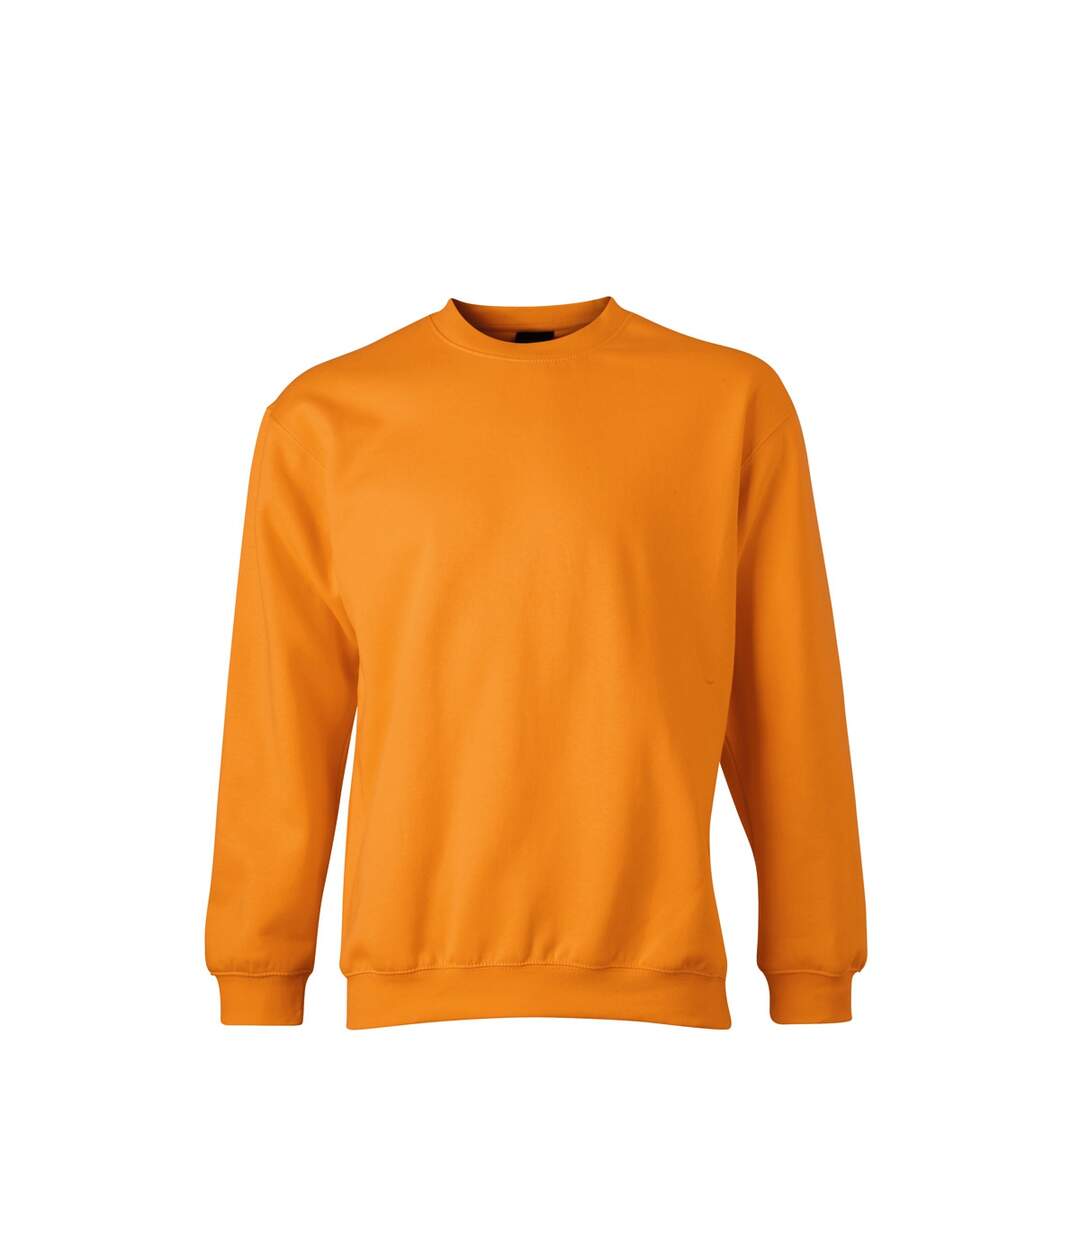 Sweat-shirt col rond - JN040 - orange - mixte homme femme